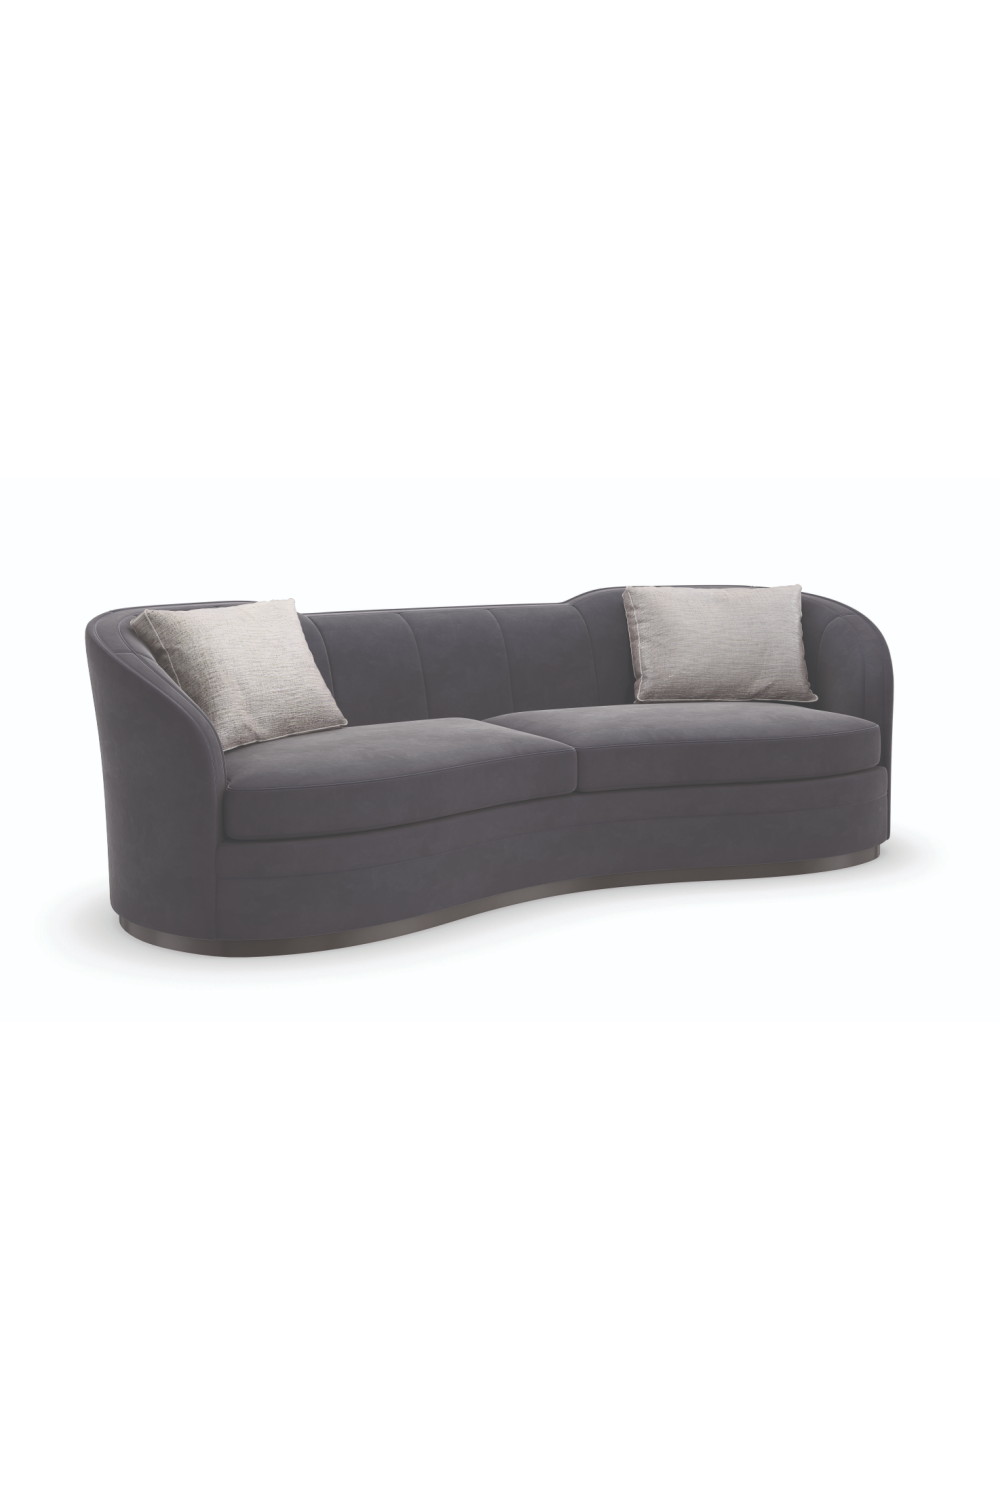 Black Organic-Shaped Sofa | Caracole Eclipse | Oroa.com